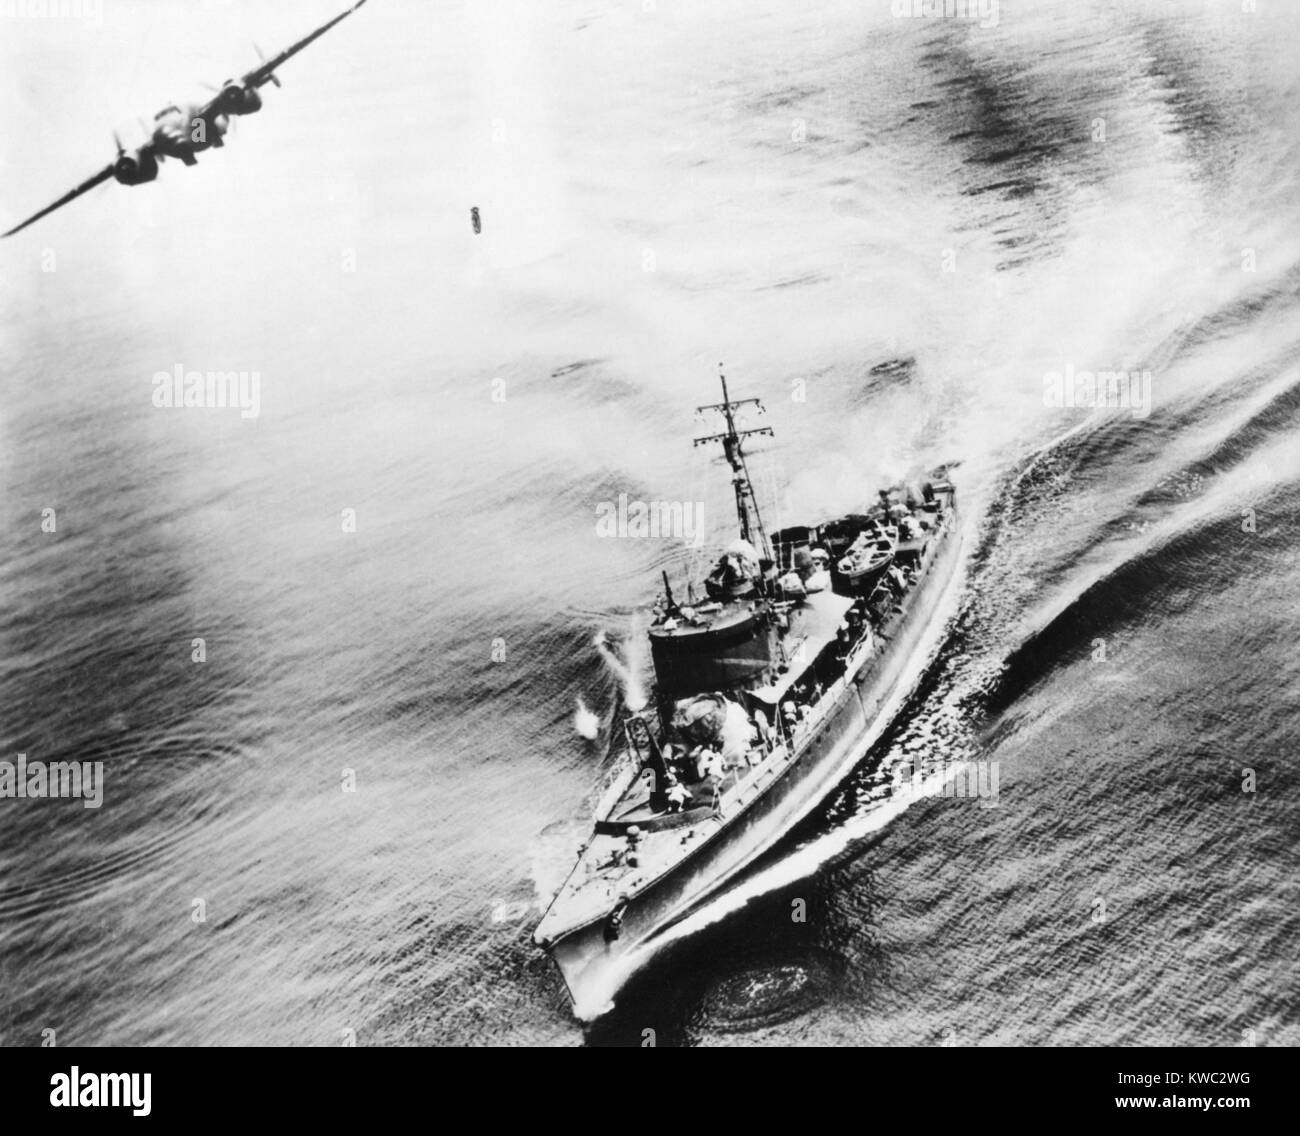 Kleine japanische Krieg Schiff durch US-amerikanische B-25 Bomber in der Bismarck Sea, 21. März 1944 bombardiert. Die Schiffe crew gesehen laufen für die Abdeckung. Das Schiff wurde durch den Angriff in der Nähe von neuen Irland versenkt. Weltkrieg 2 (BSLOC_2015_13_121) Stockfoto